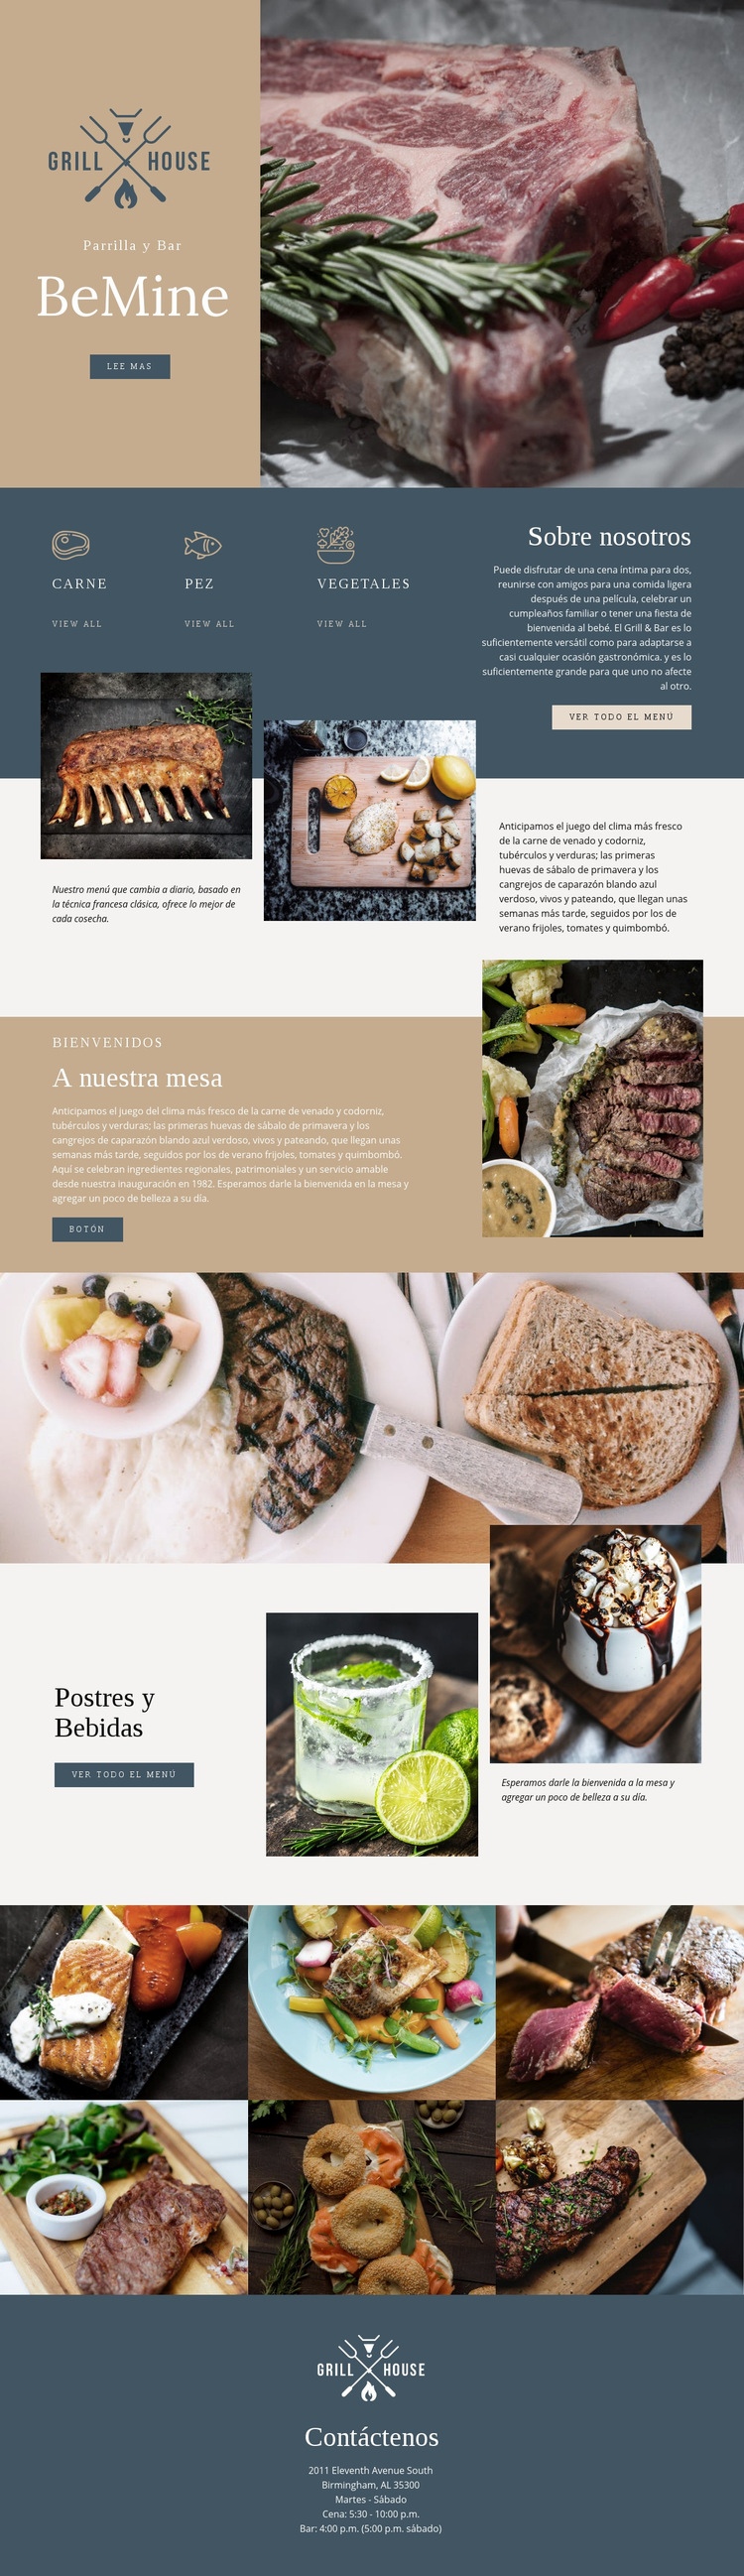 El mejor restaurante grill house Diseño de páginas web